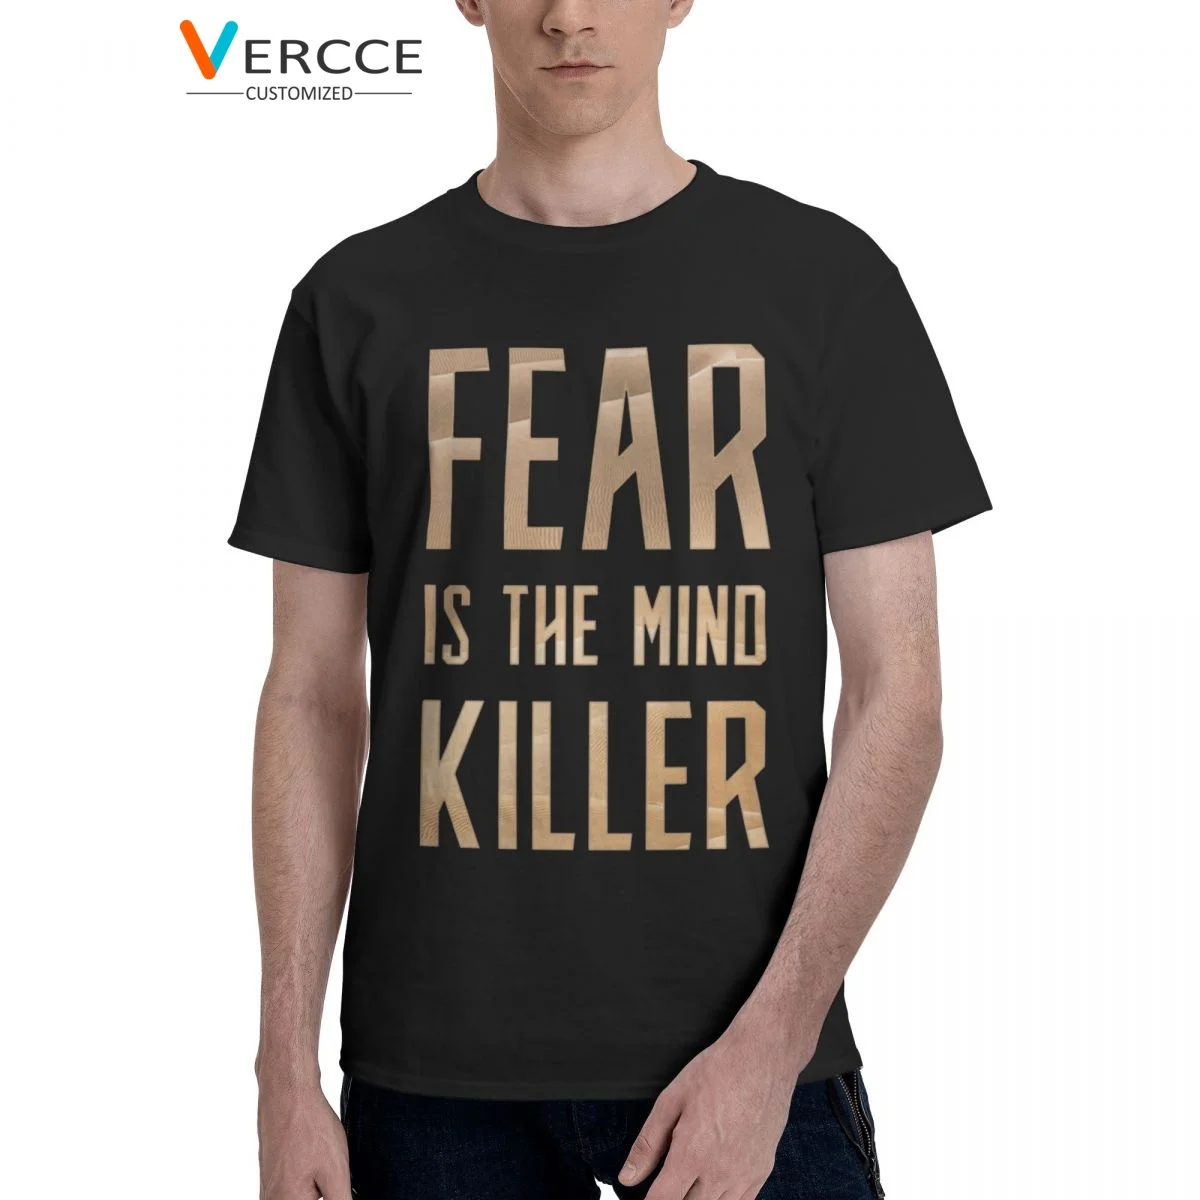 

Dune Fear Is The Mind Killer T Shirt 100% Cotton Tees Crewneck Clothing Men Women Tshirt Unique Gift Idea